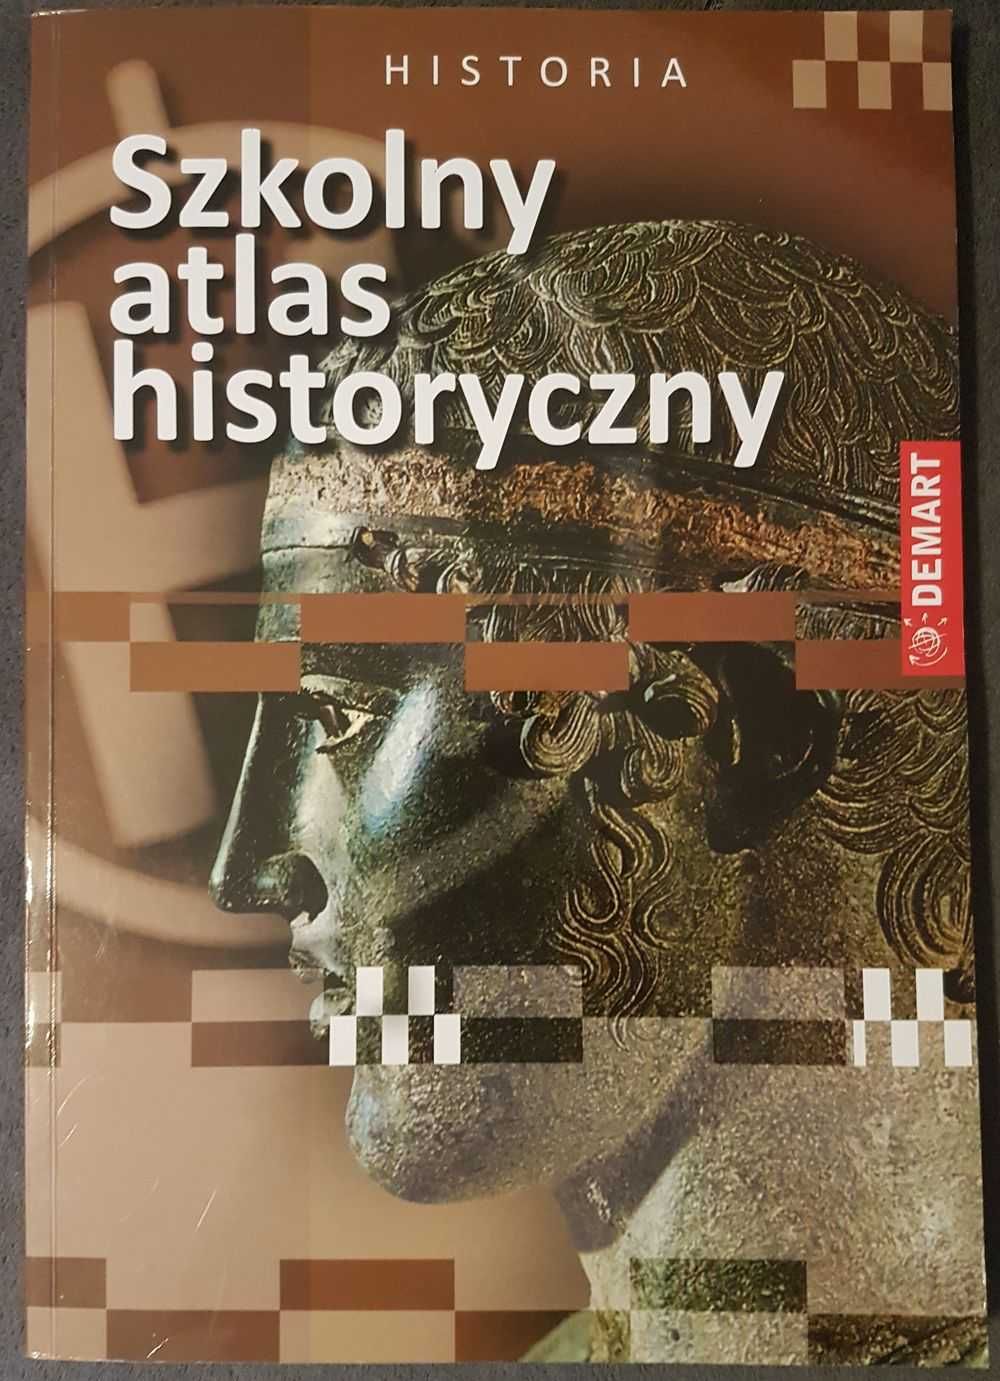 Szkolny Atlas Historyczny wyd. DEMART, stan idealny